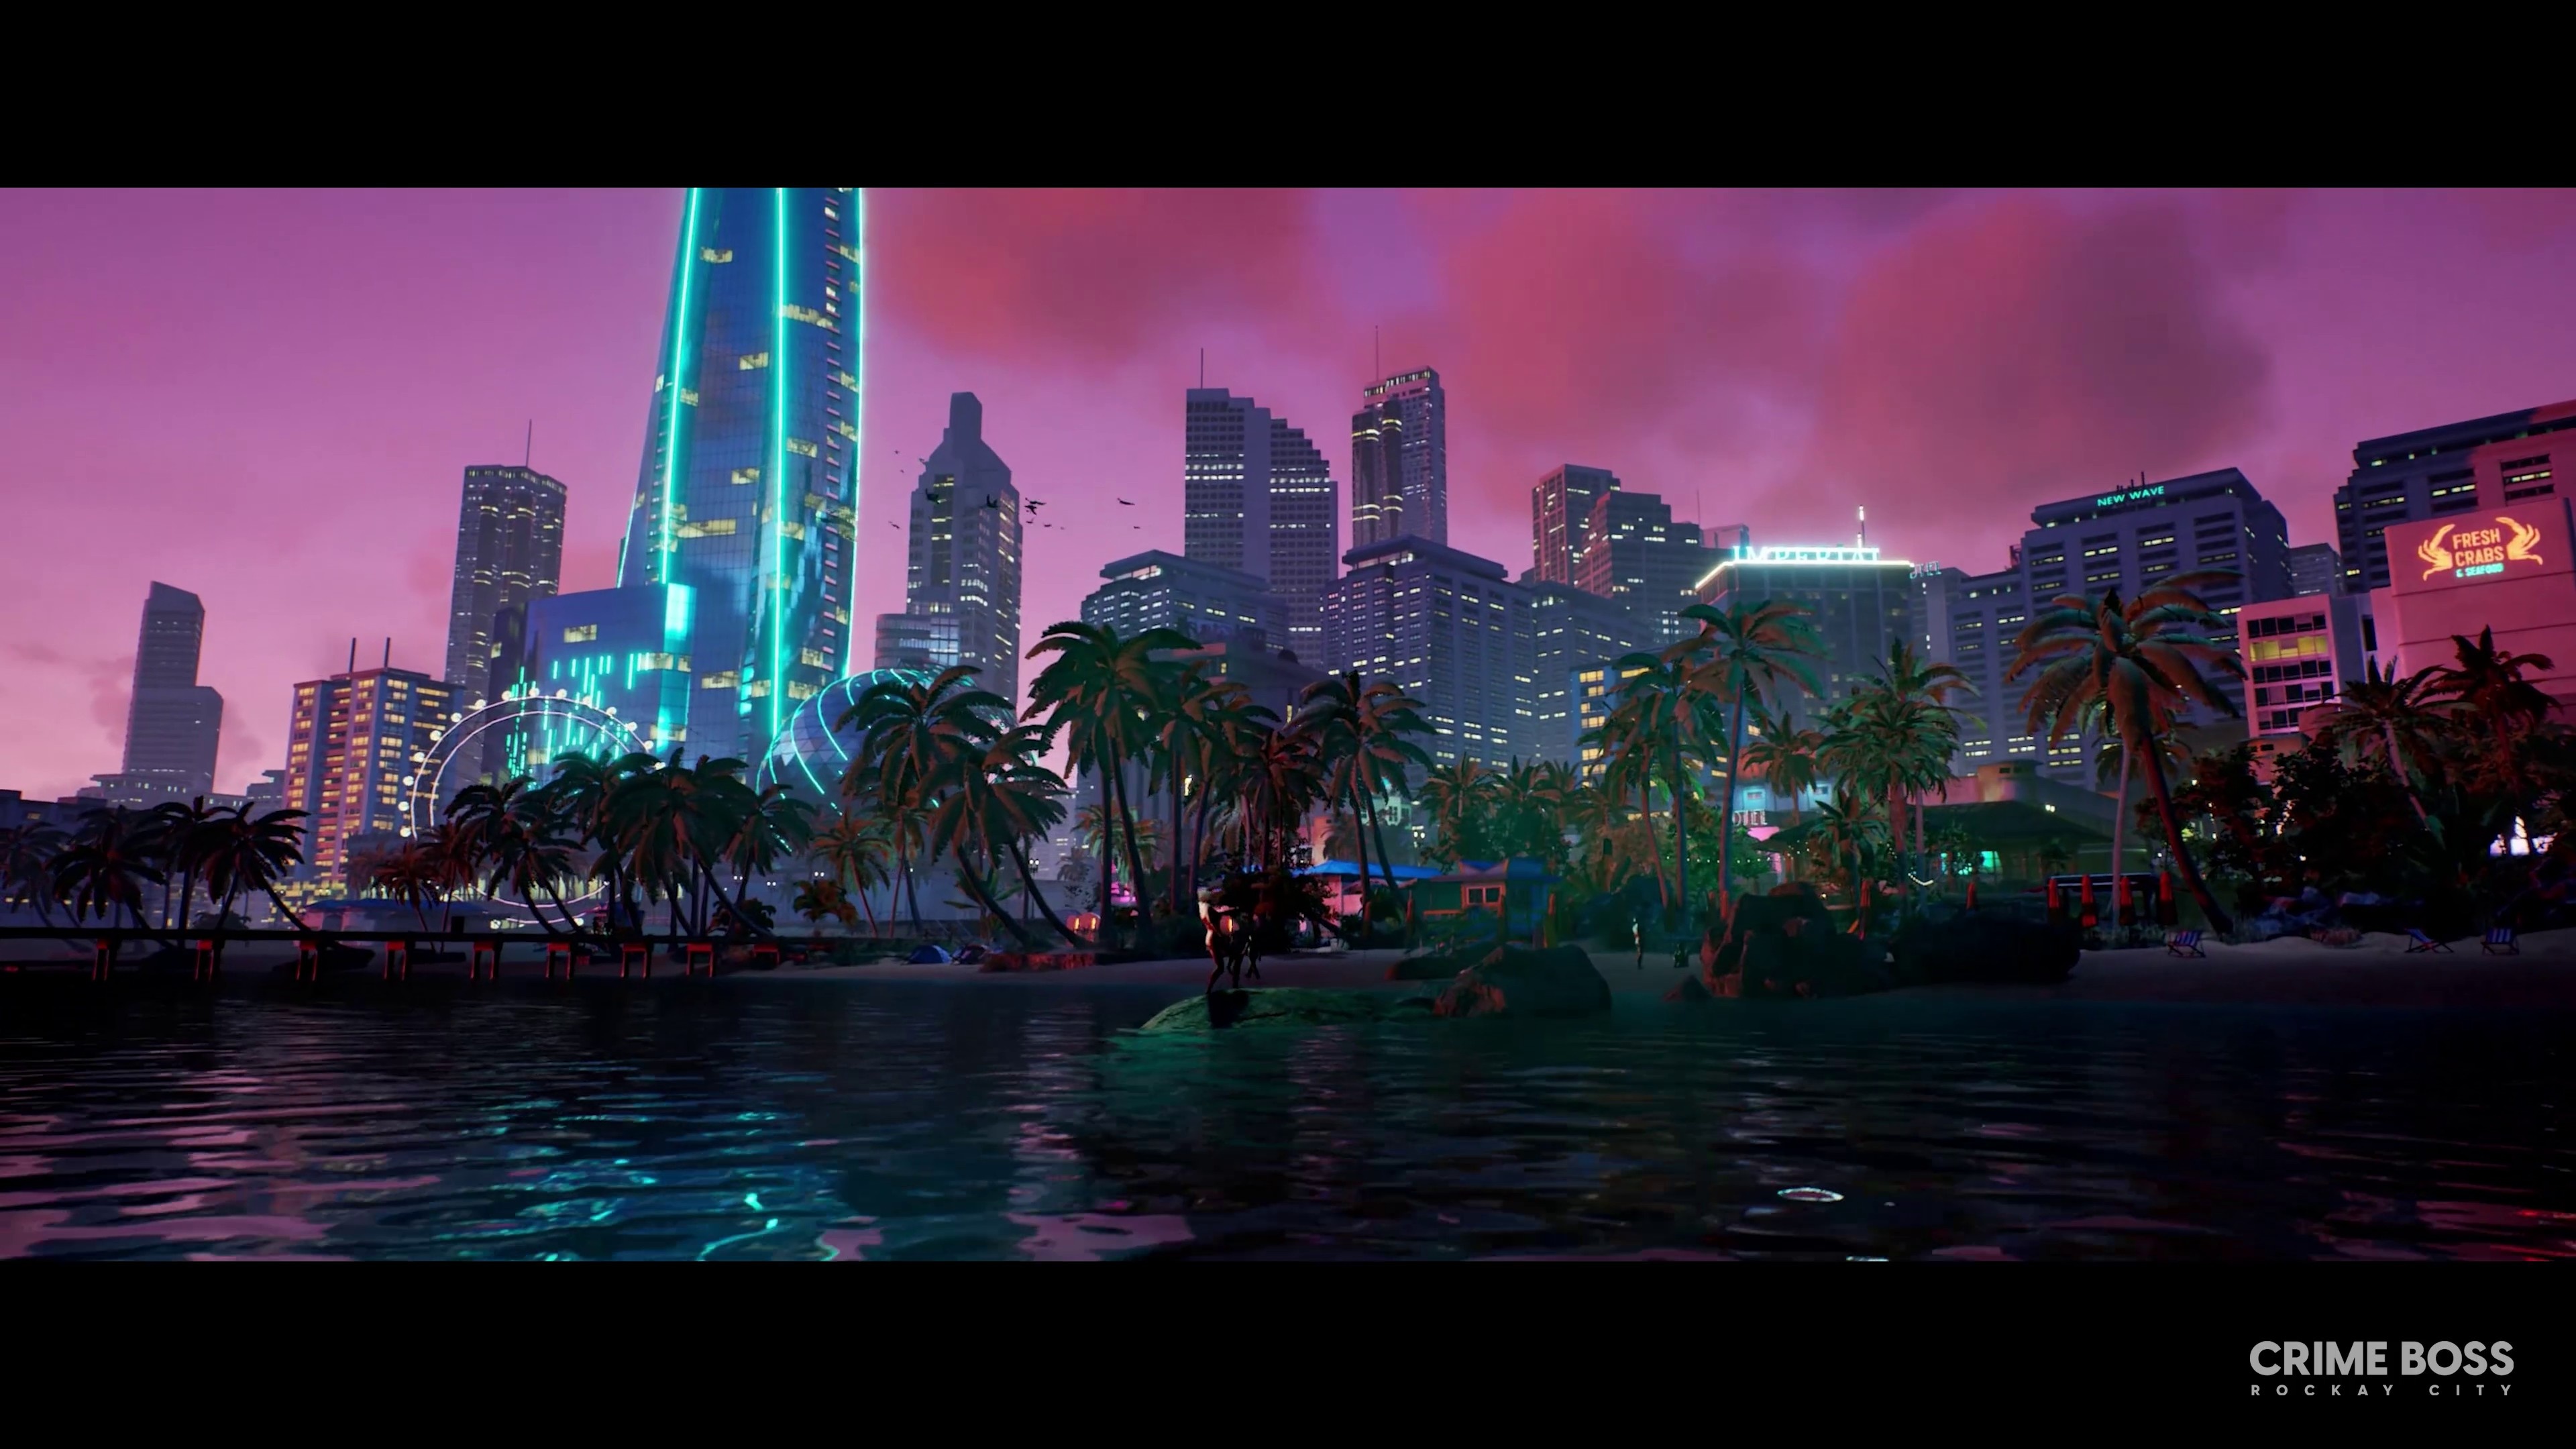 (Rockay City is duidelijk visueel geïnspireerd op Miami uit de jaren 90.)